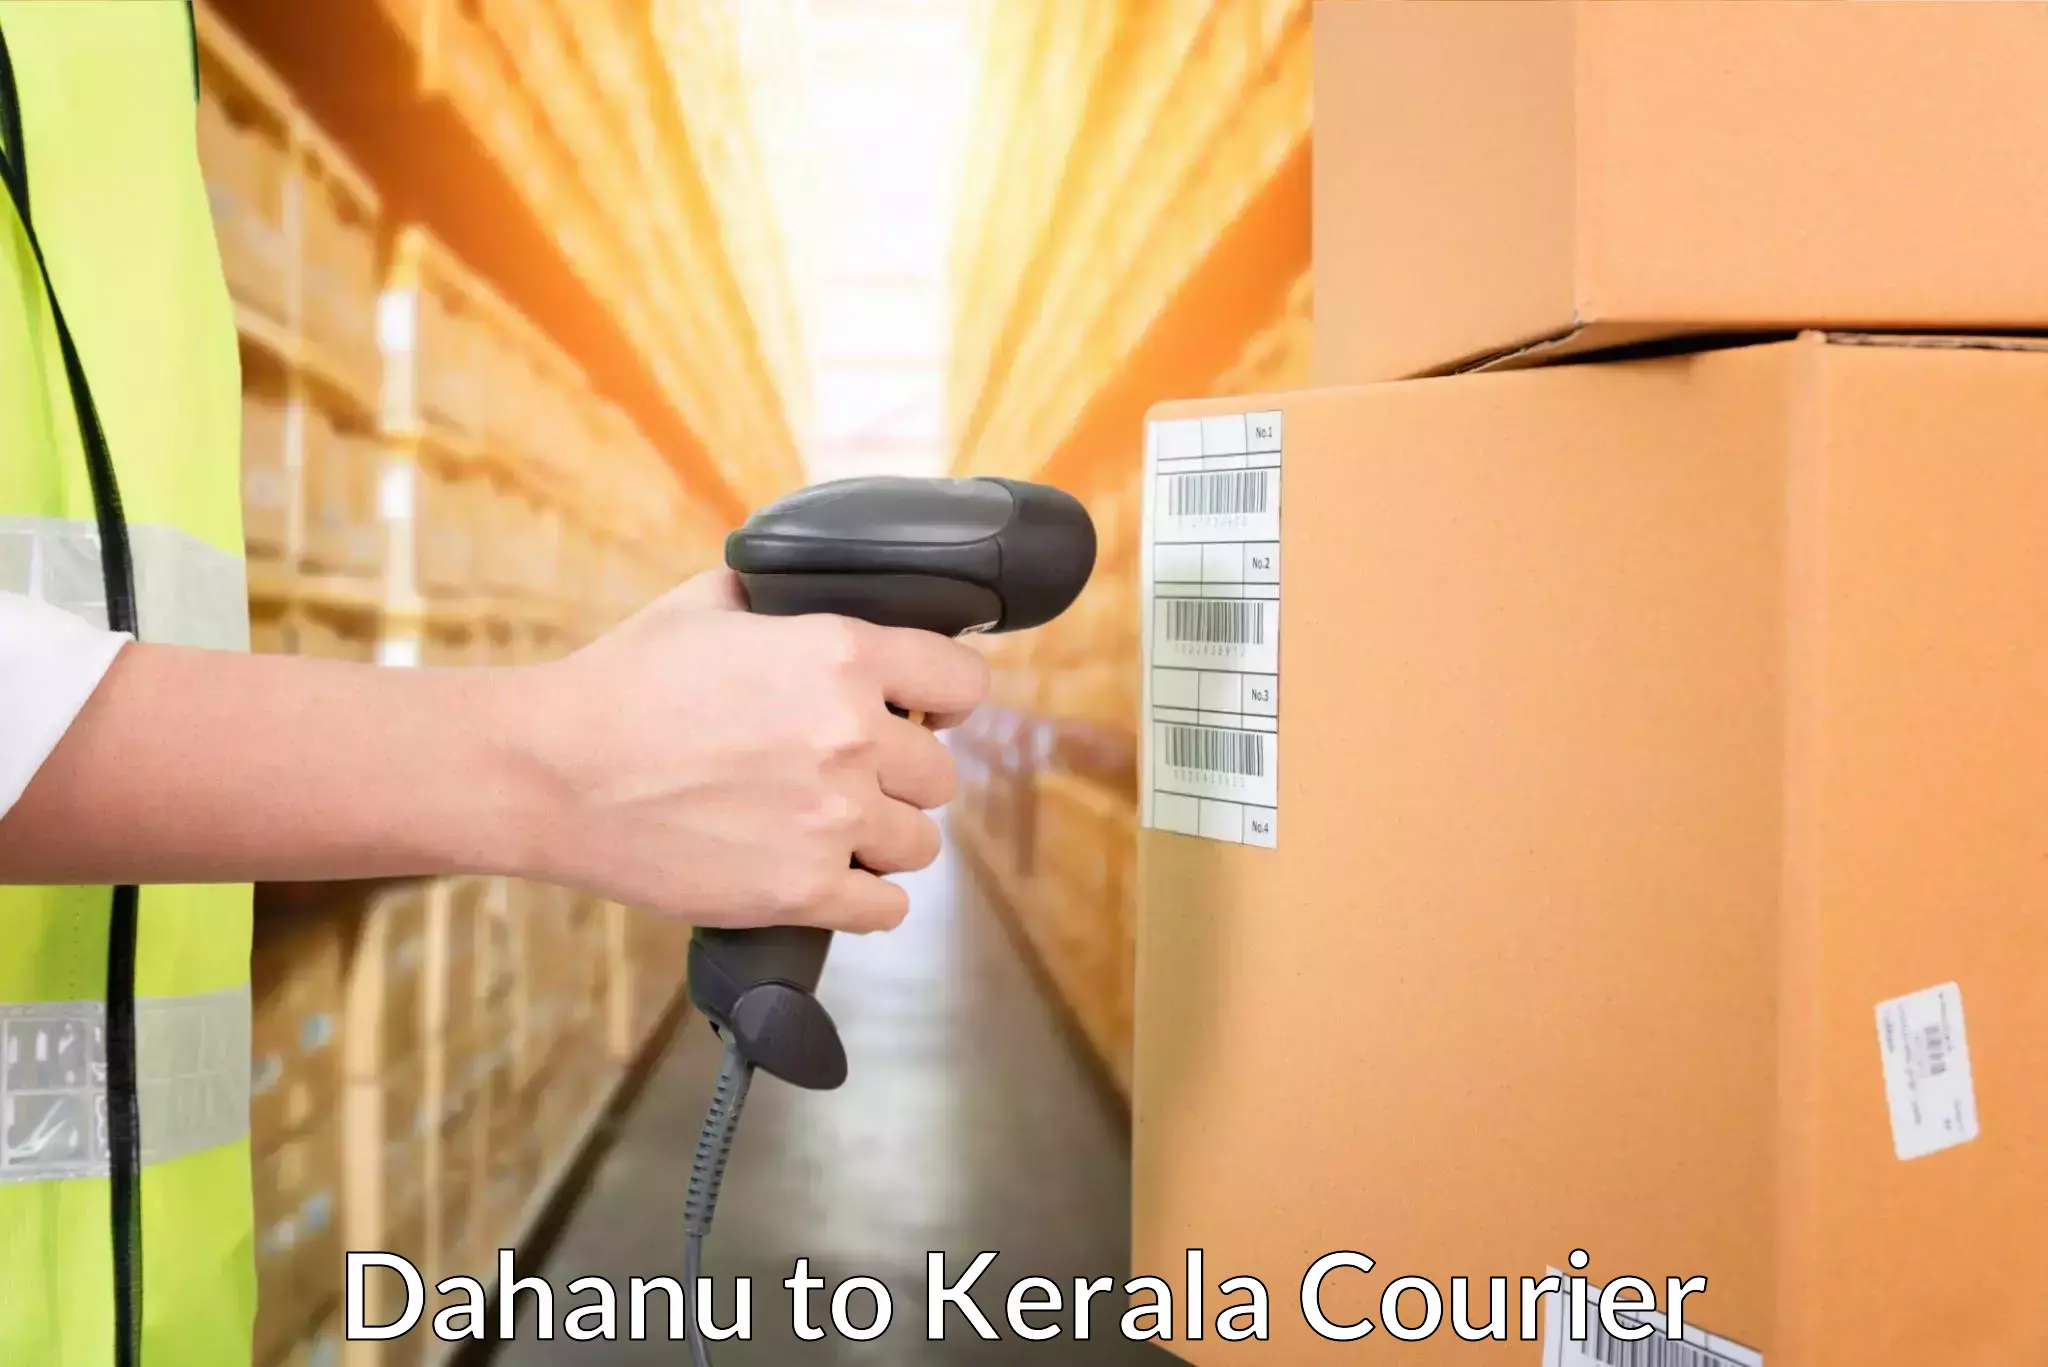 Advanced courier platforms Dahanu to Alathur Malabar